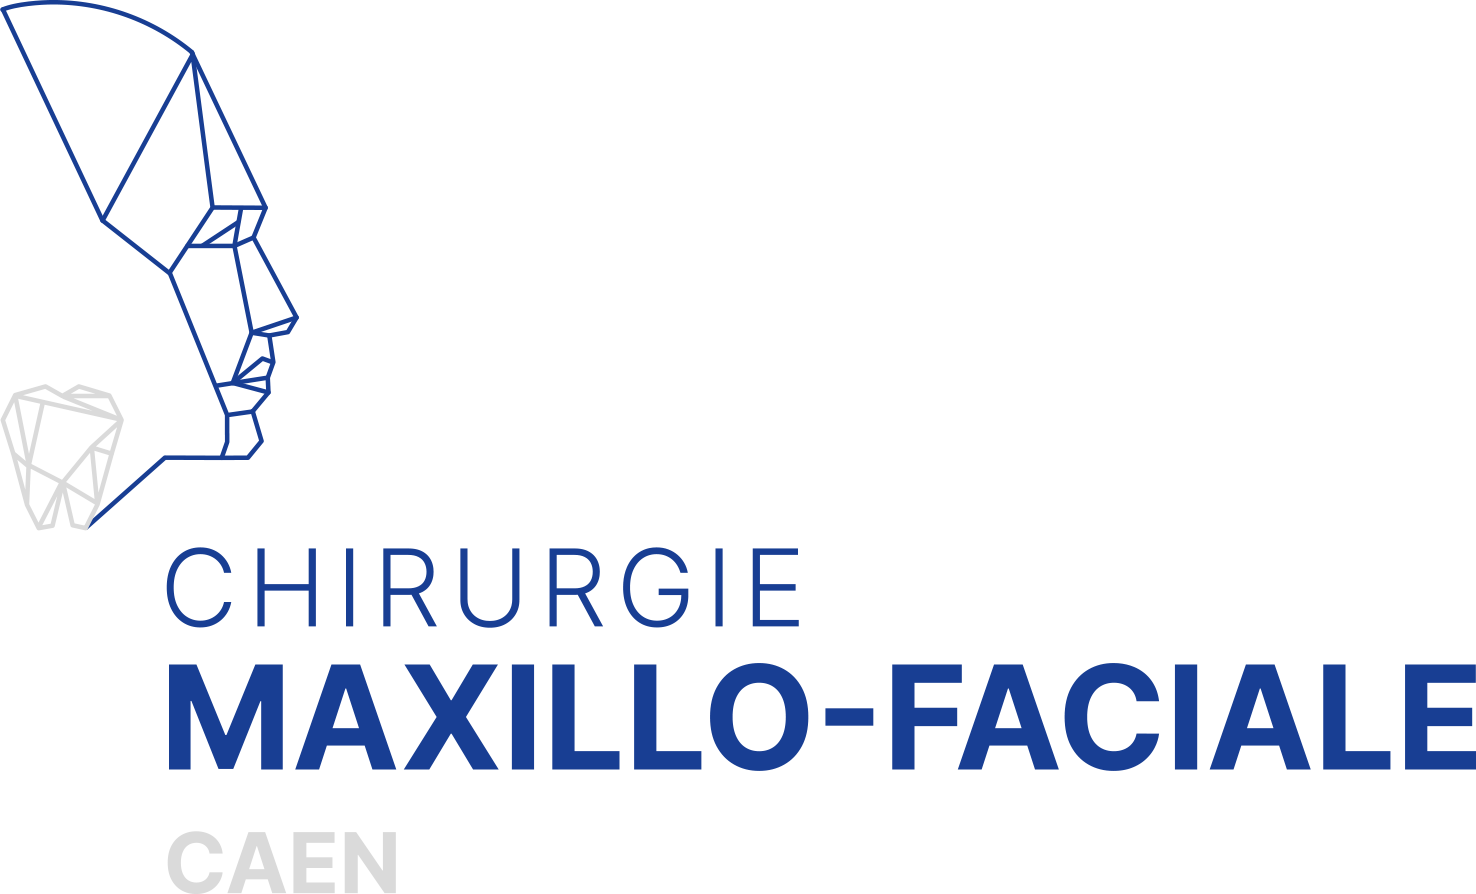 Maxillo-Faciale Caen